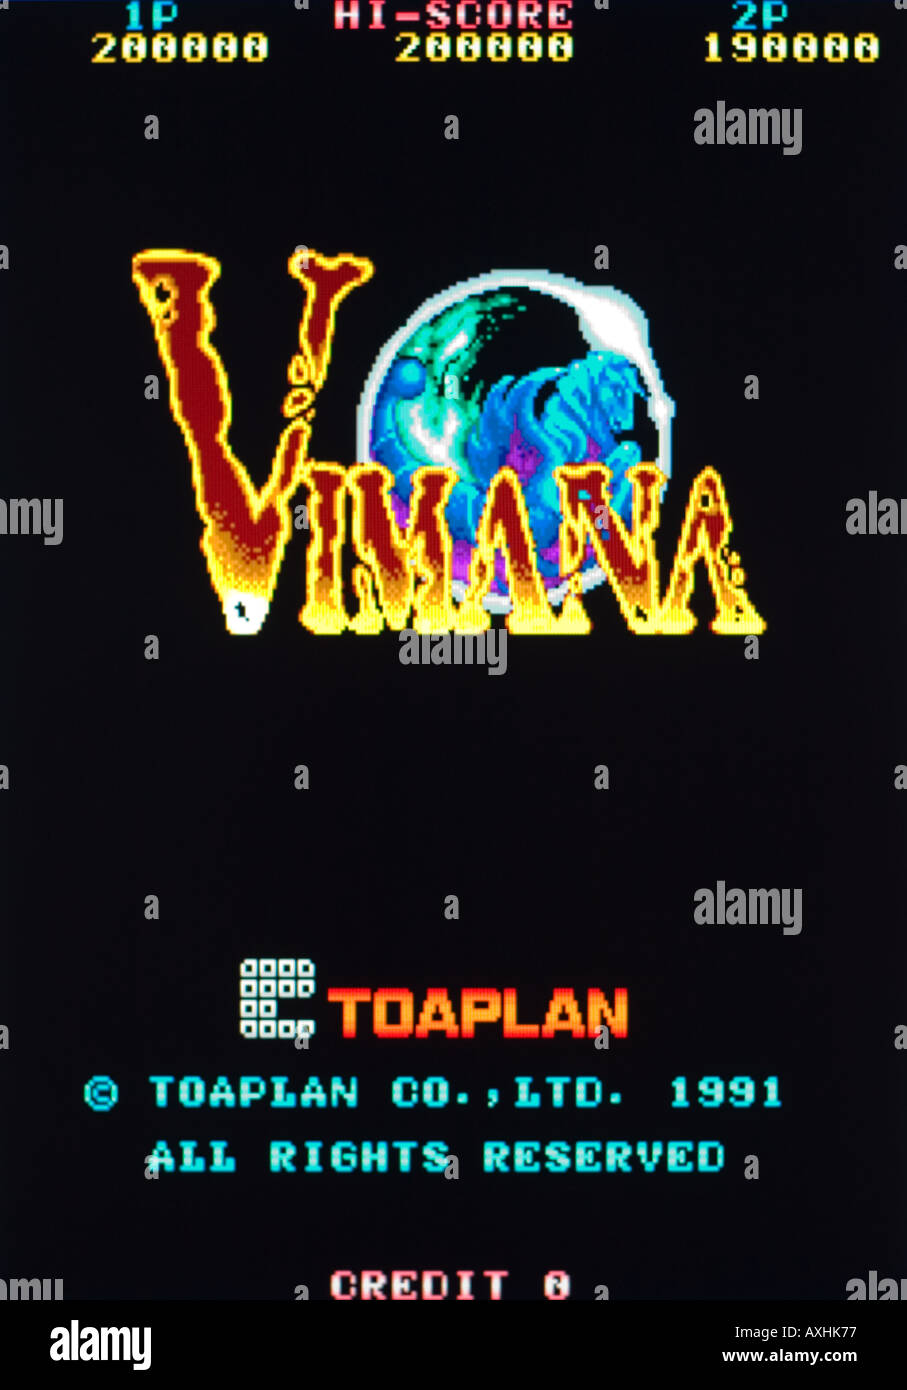 Vimana Toaplan Co Ltd 1991 Vintage Arcade Videospiel Screenshot - nur zur redaktionellen Nutzung Stockfoto